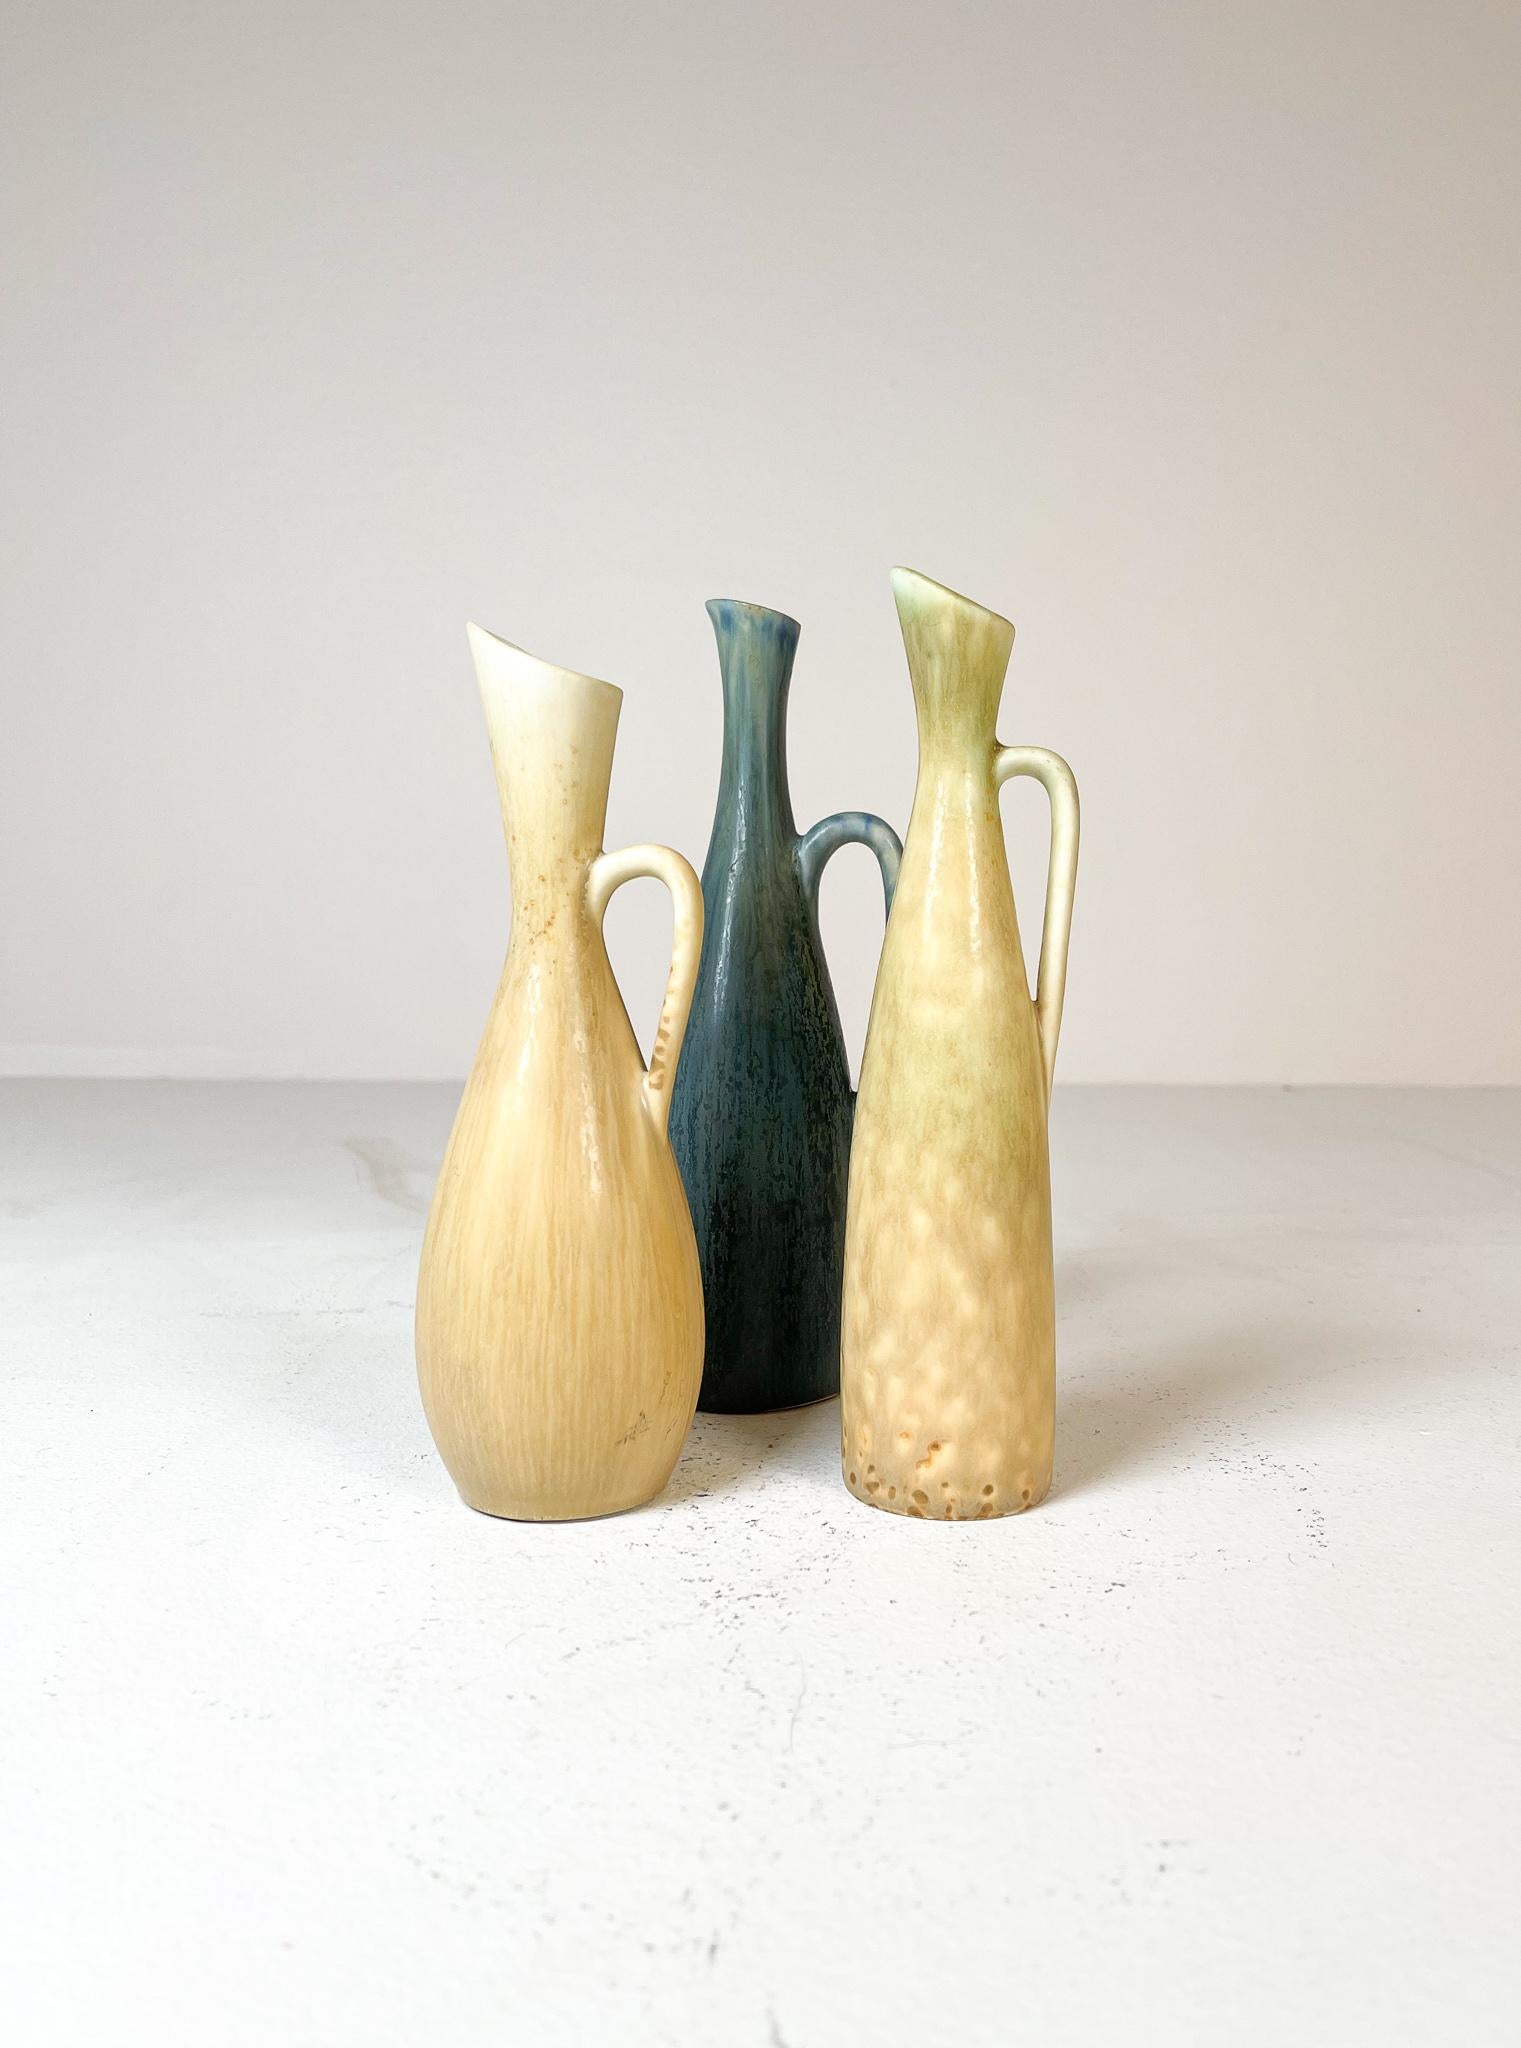 Sammlung von 3 Vasen aus der Mitte des Jahrhunderts, hergestellt bei Rörstrand und dem Hersteller/Designer Carl Harry Stålhane. Hergestellt in Schweden in den 1950er Jahren. Schöne glasierte Vasen mit schönen Linien. Die typische Hasenfellglasur von